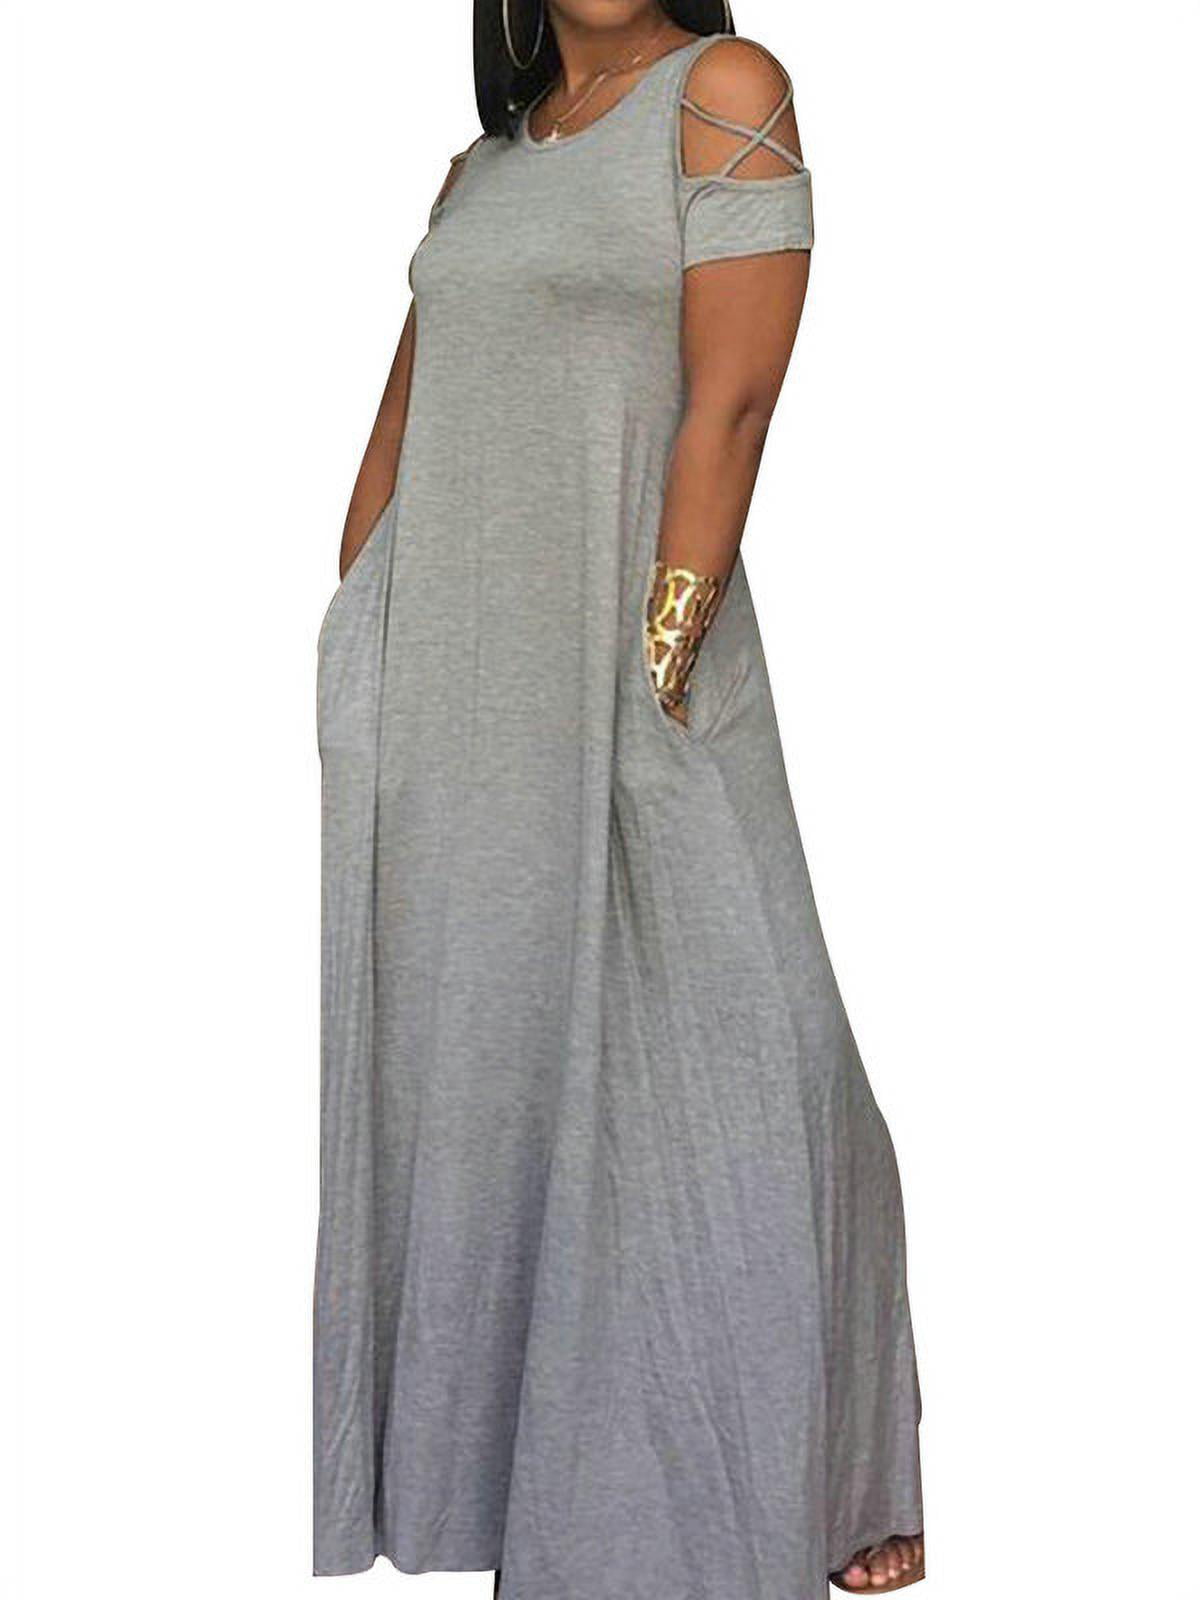 Scvgkk Women's Plus Size Cold Shoulder Solid Color Maxi Dress - Walmart.com